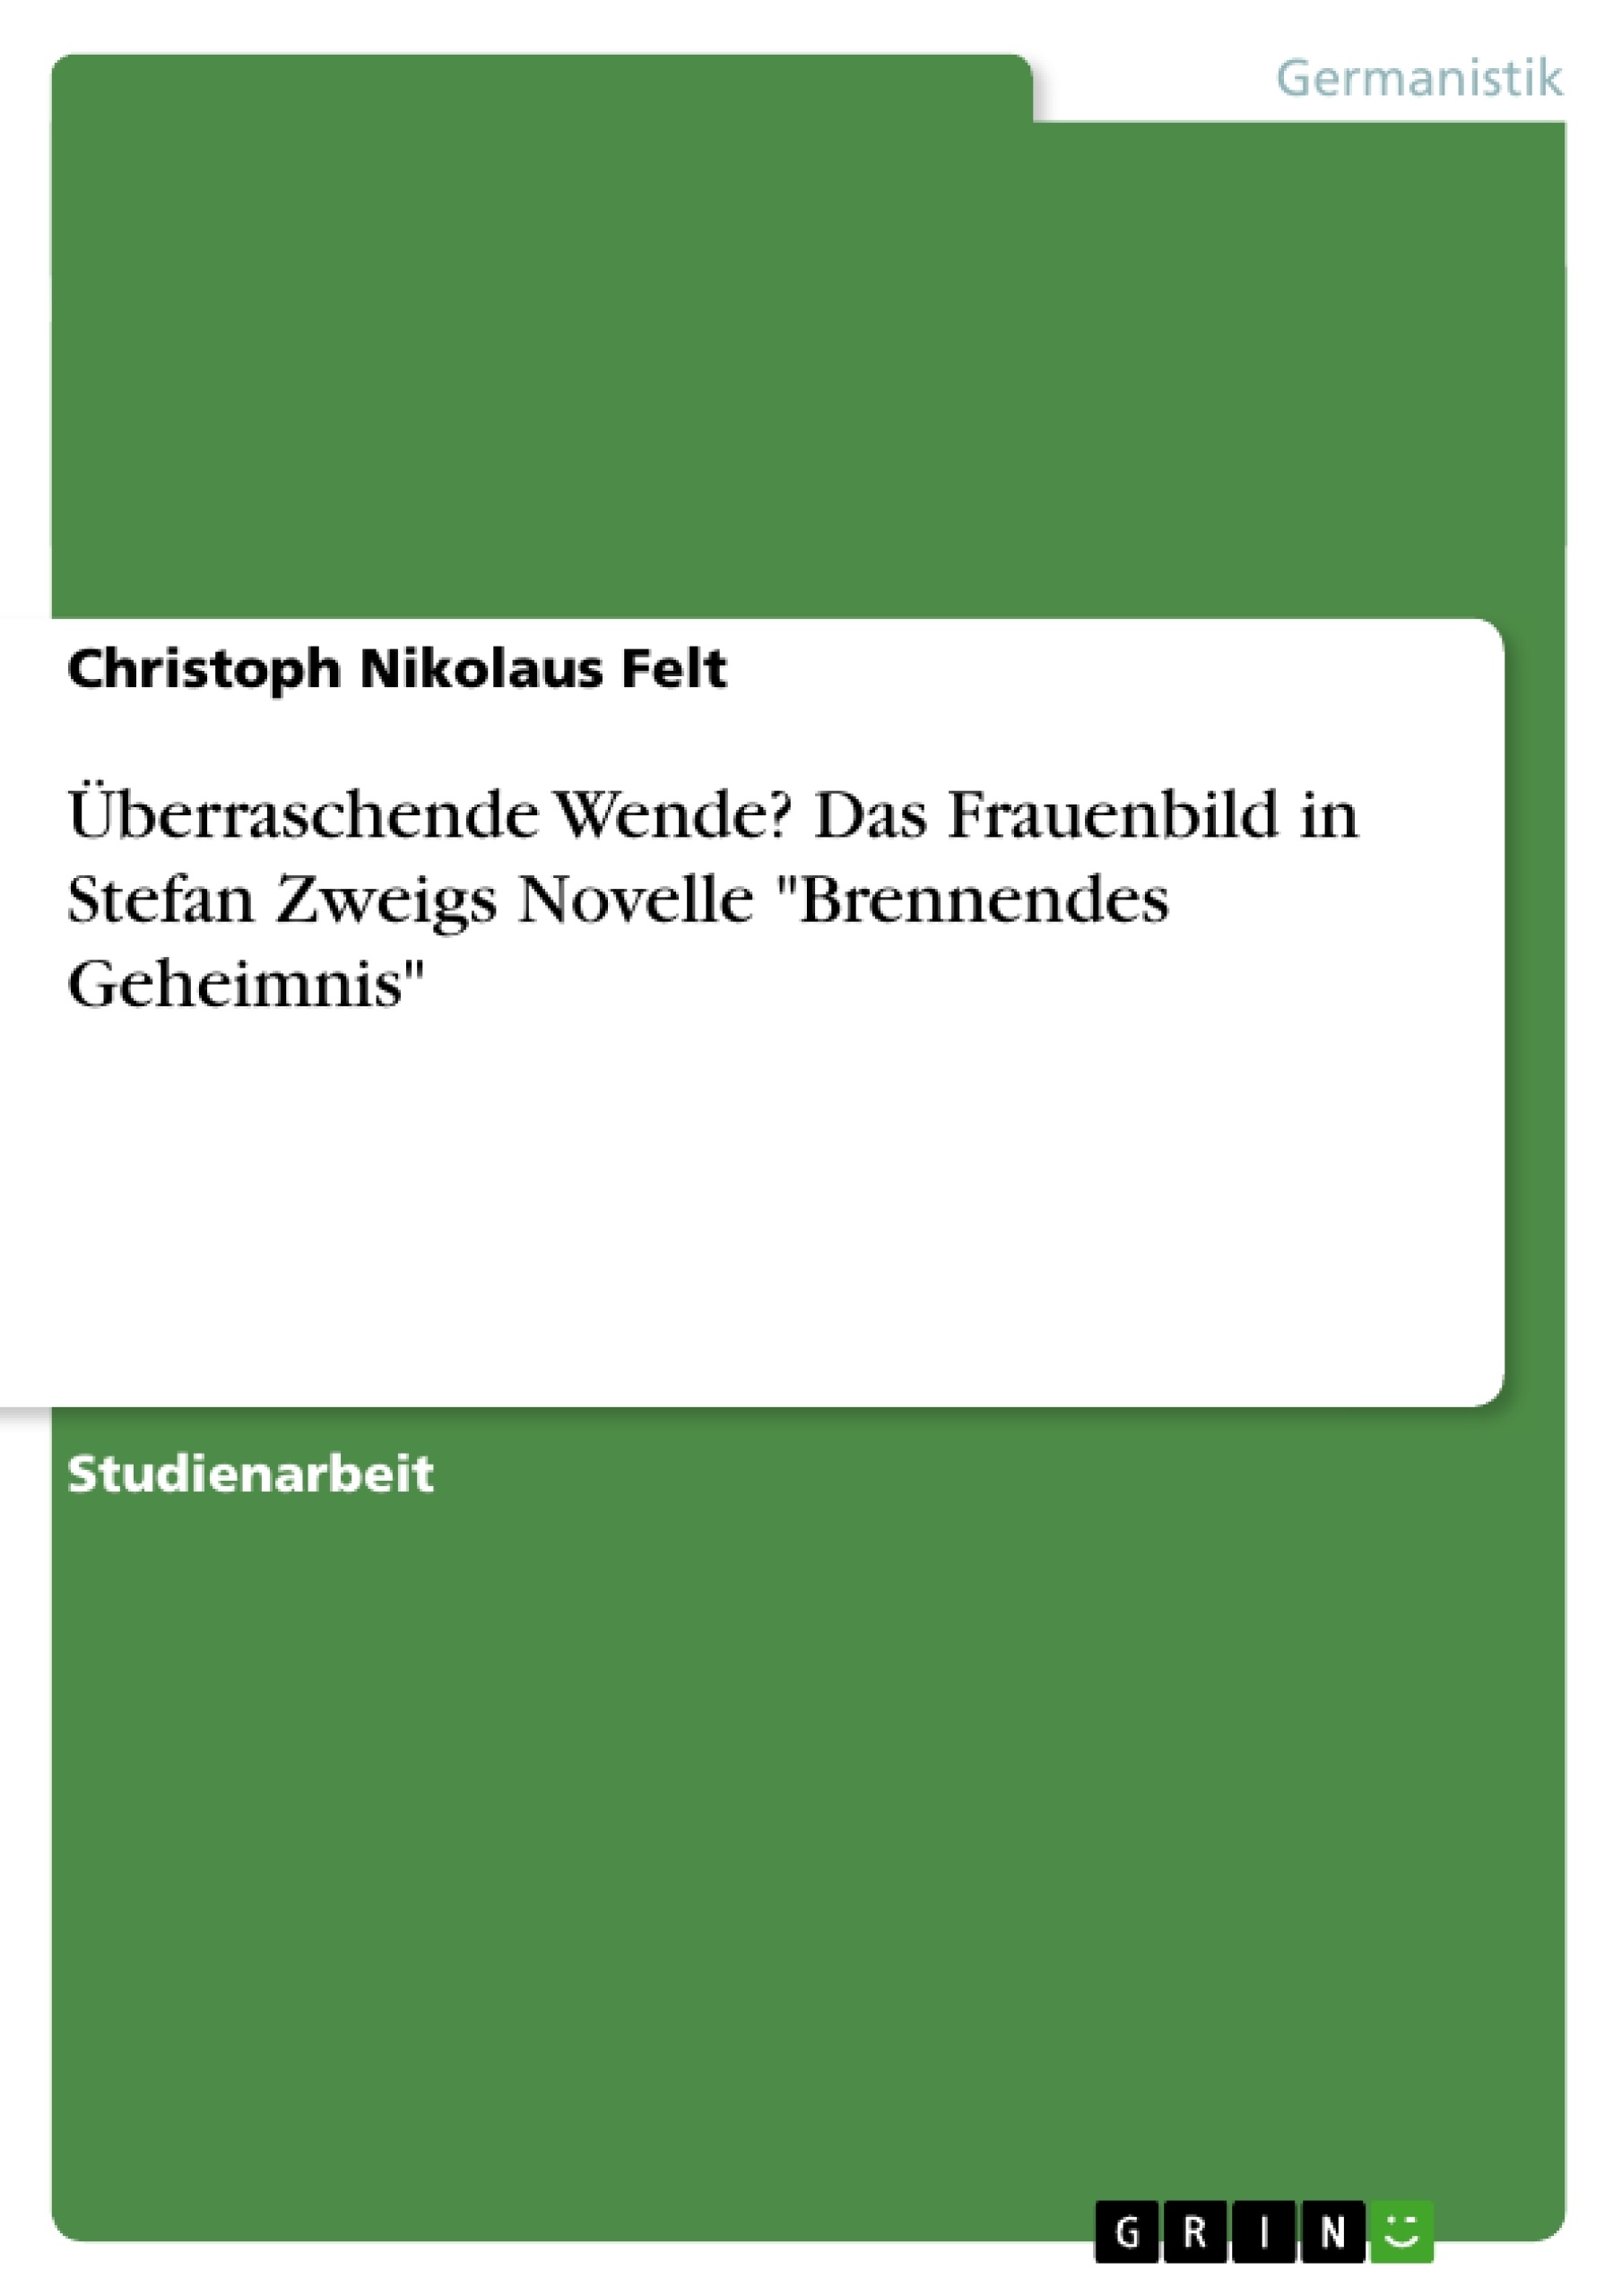 Titre: Überraschende Wende? Das Frauenbild in Stefan Zweigs Novelle "Brennendes Geheimnis"